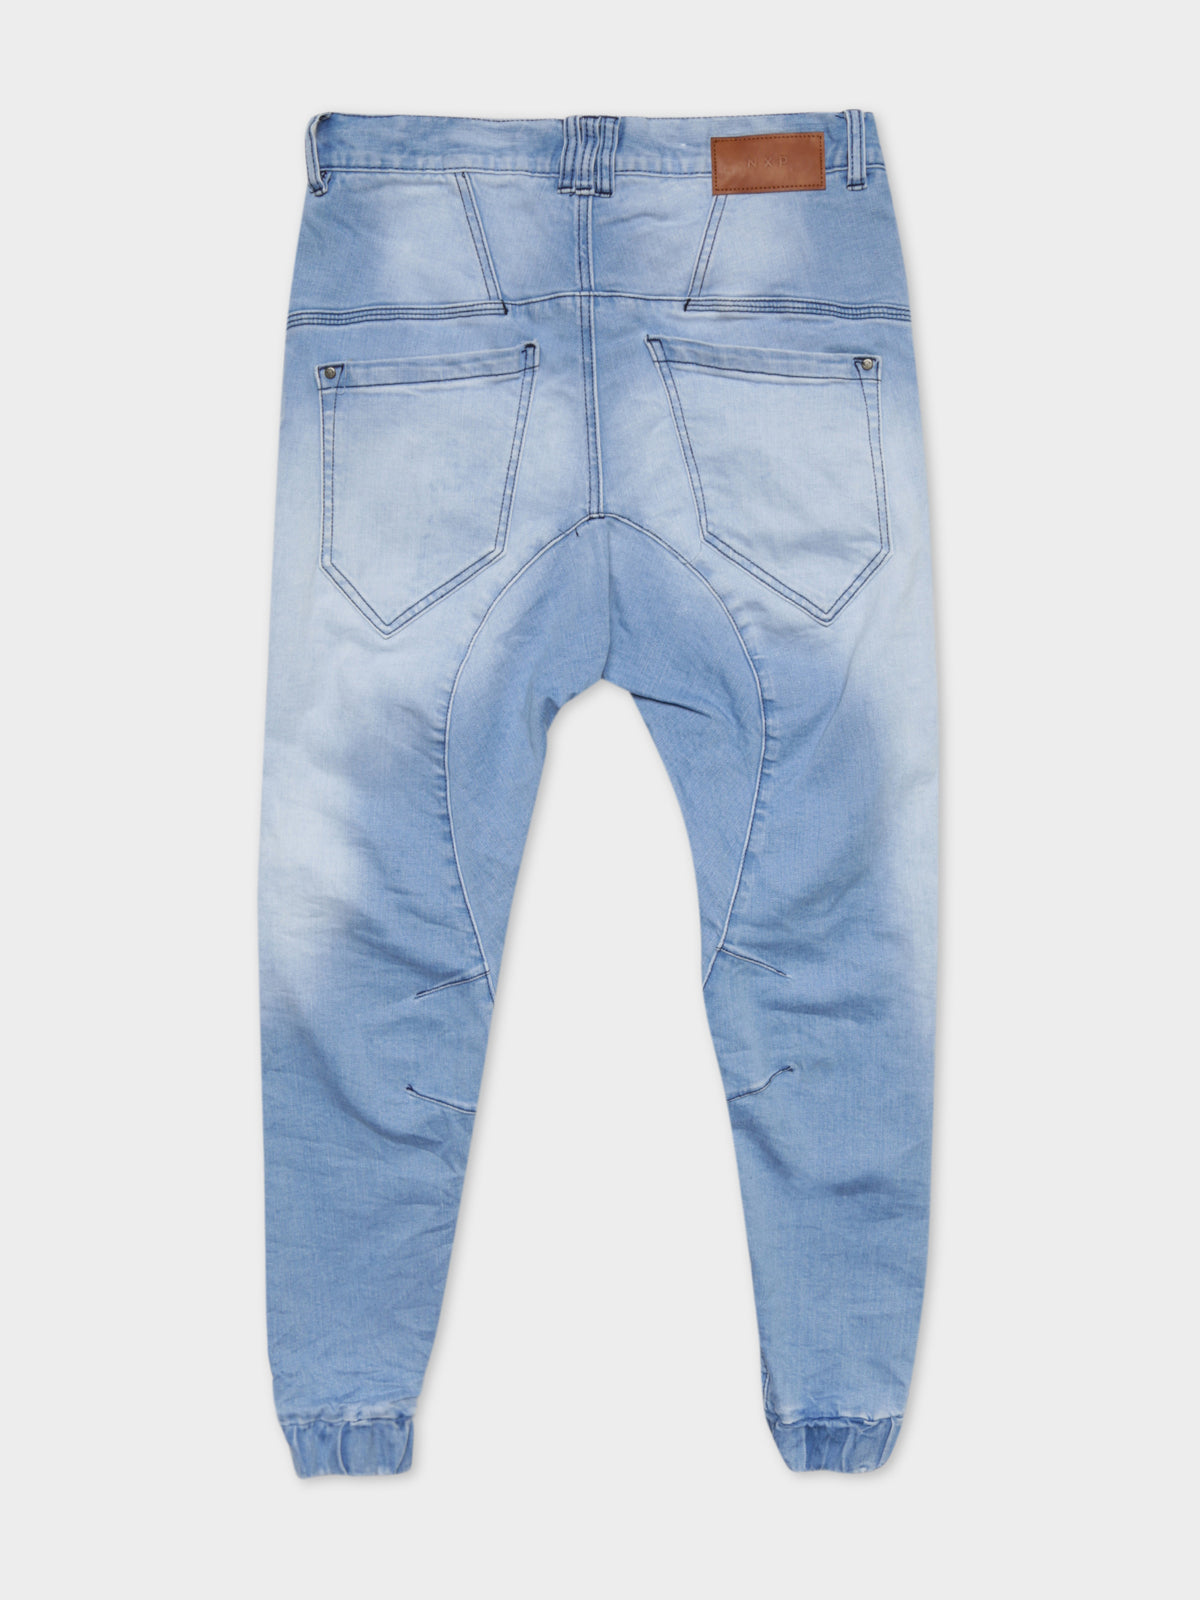 Hellcat Tight Tapered Jeans in Alaskan Blue Denim